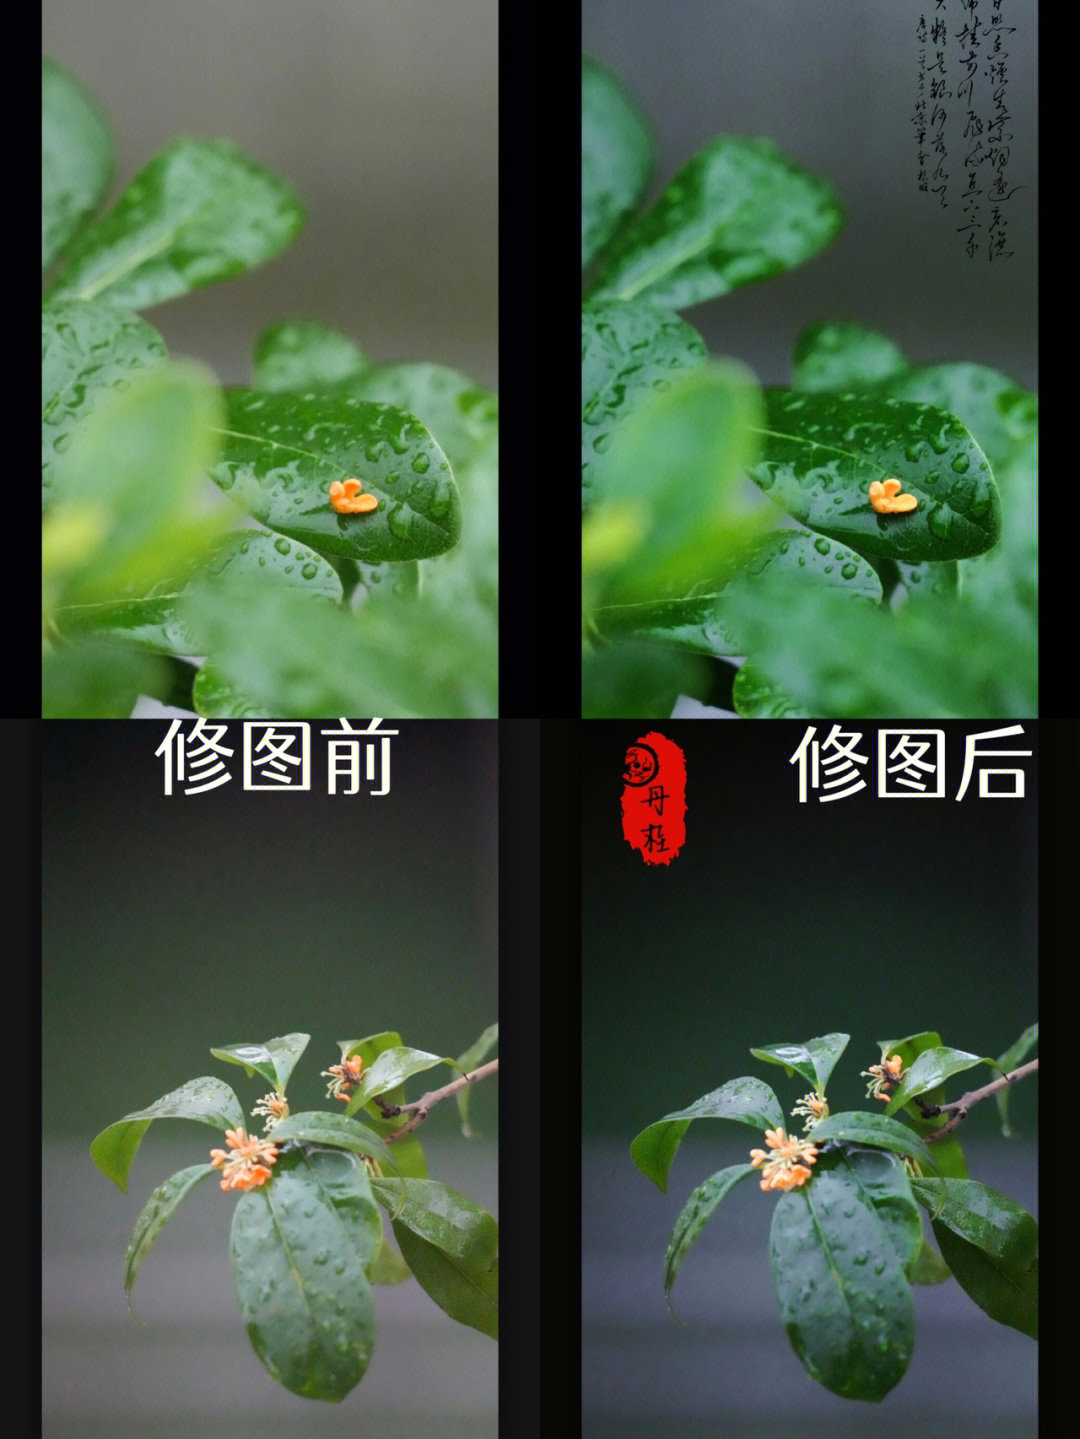 质感(龙舌兰)贴纸:中国风(选择喜欢的诗词或者水印)构图app:picsart